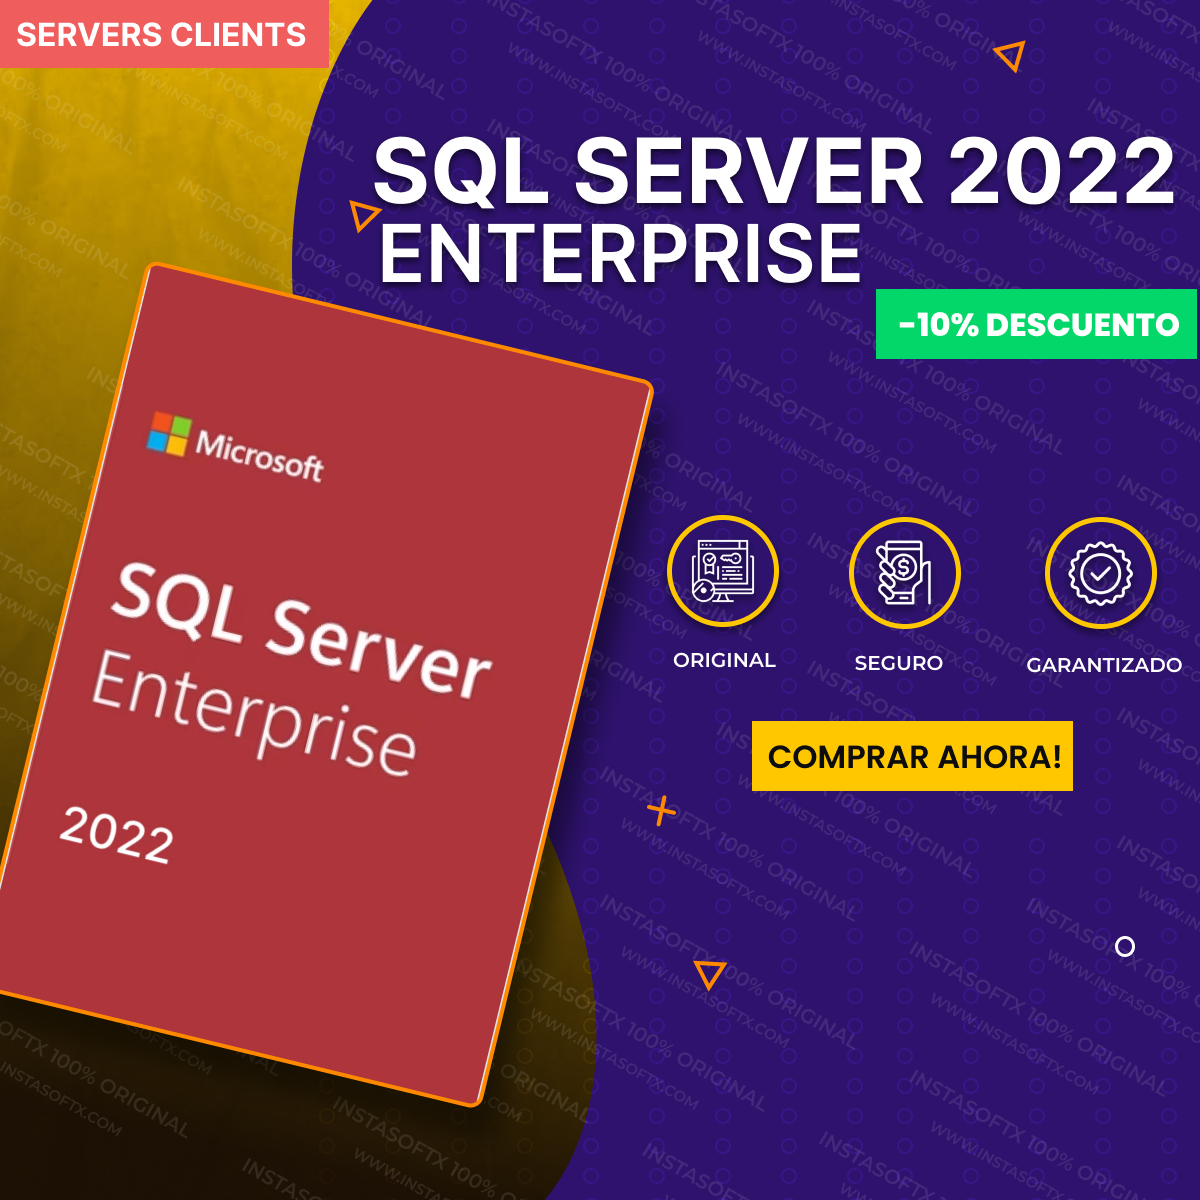 SQL SERVER ENTERPRISE 2022